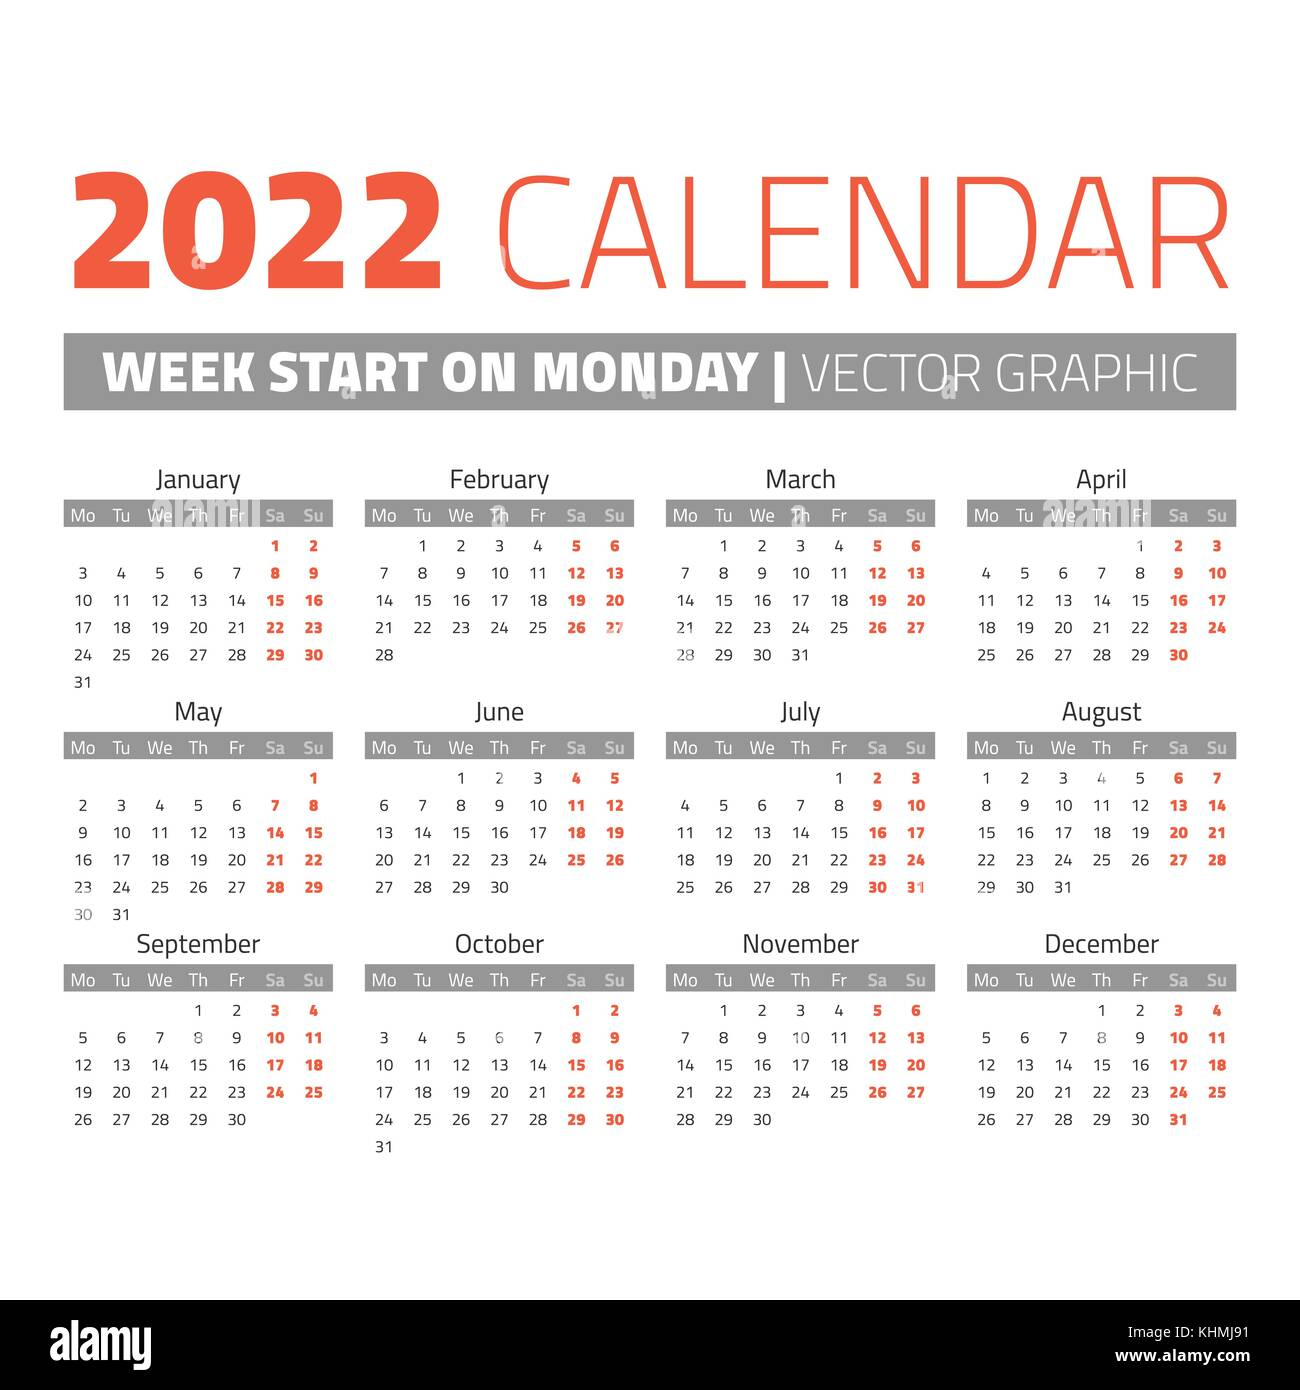 Ung Fall 2022 Calendar - Blank Calendar 2022